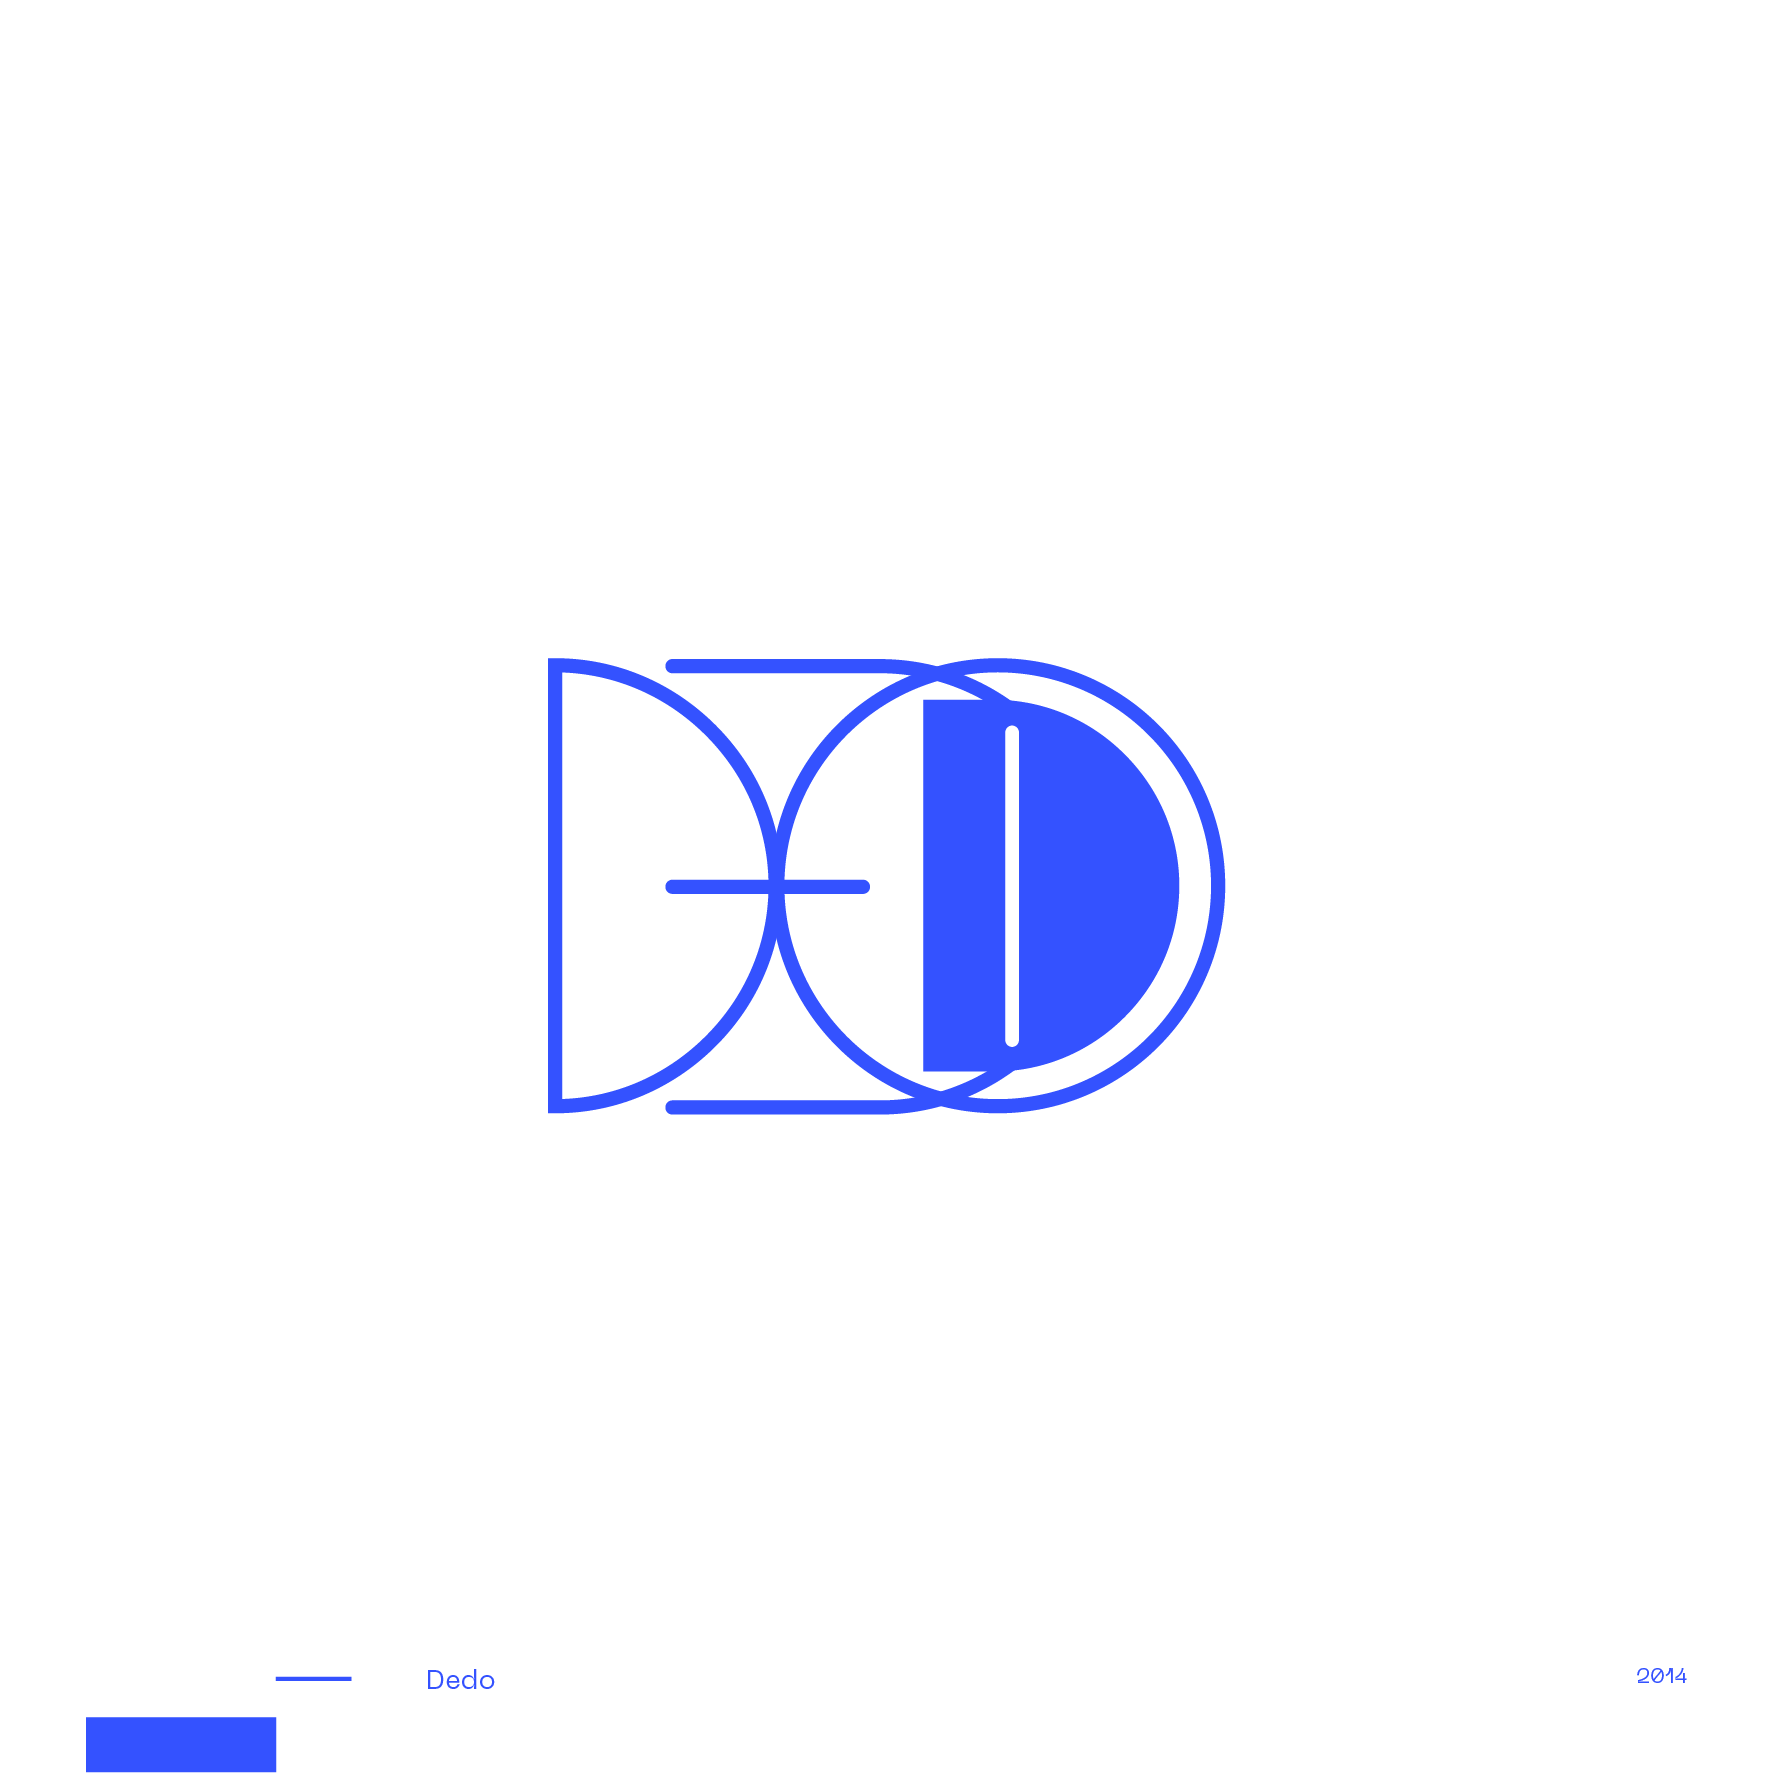 Guapo_Design_Studio_Logotype_Collection_Dedo-1